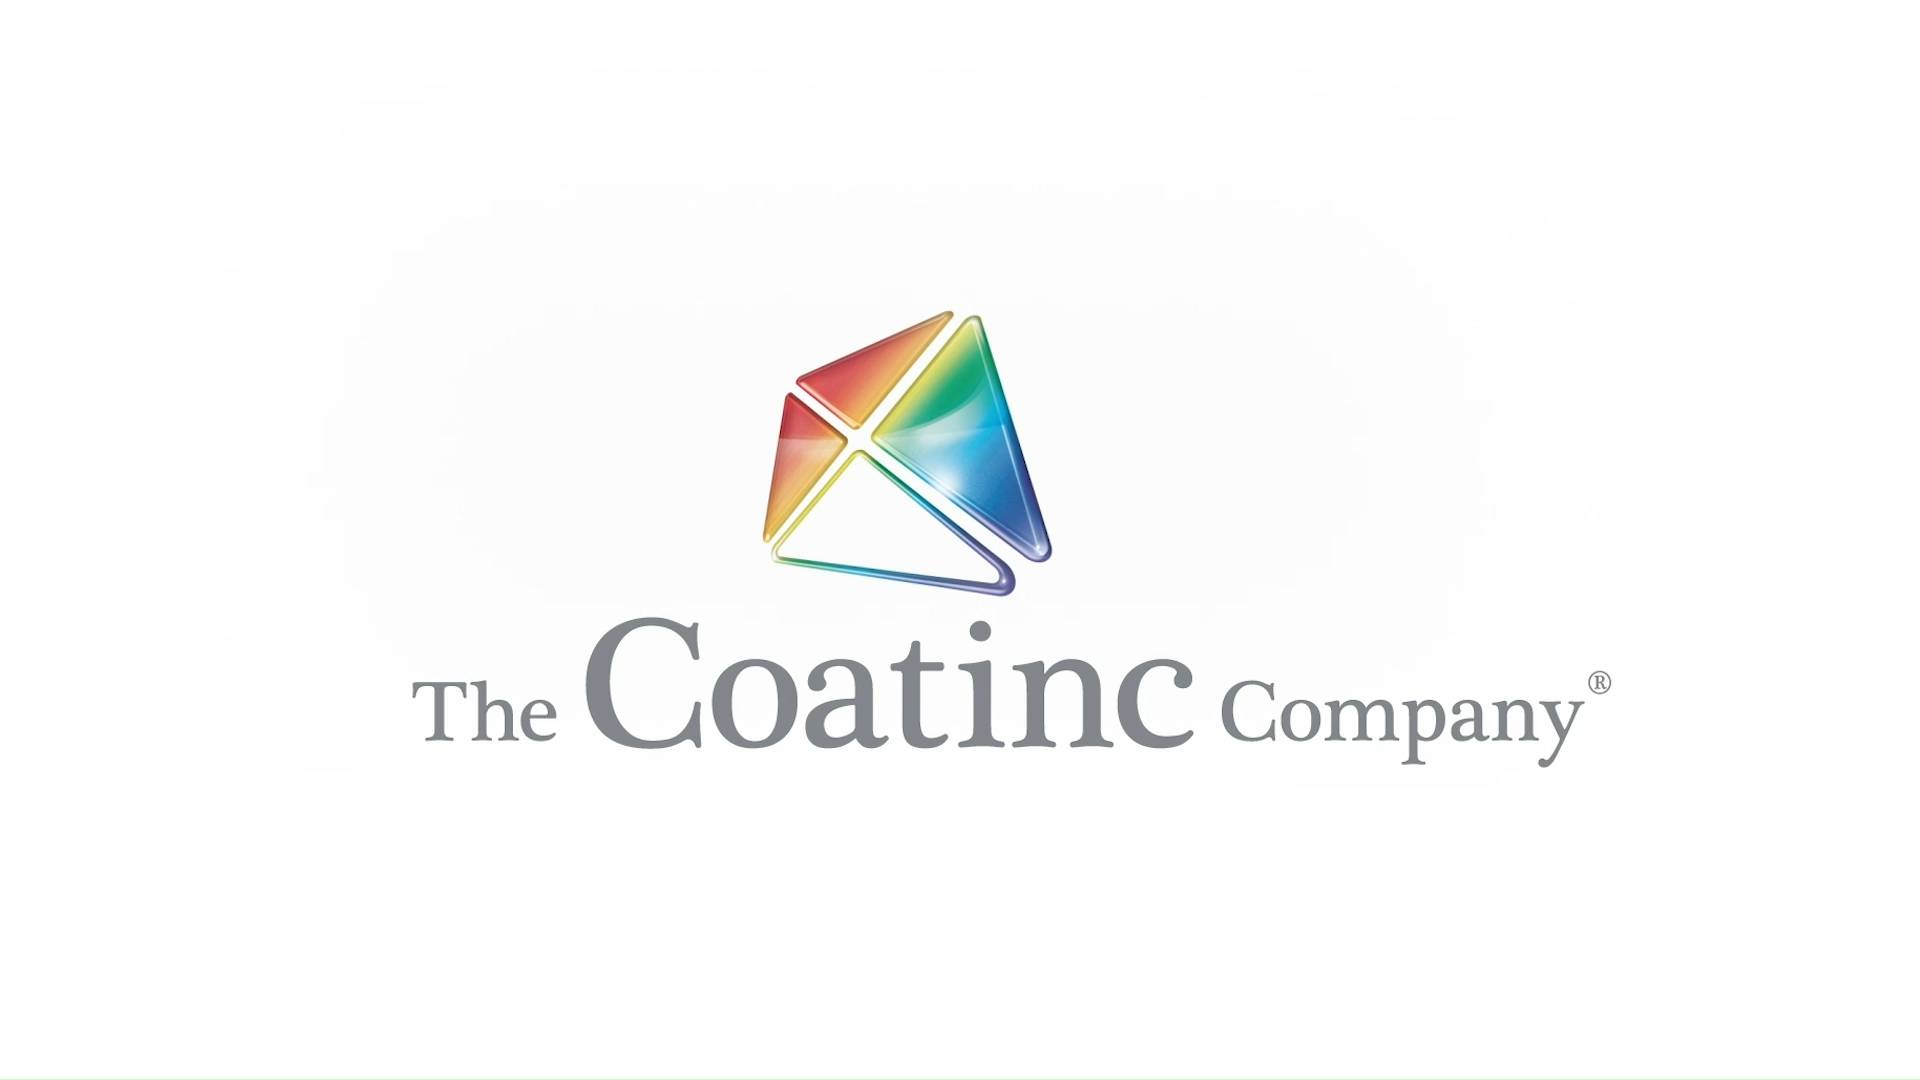 The Coatinc Company - Warum?